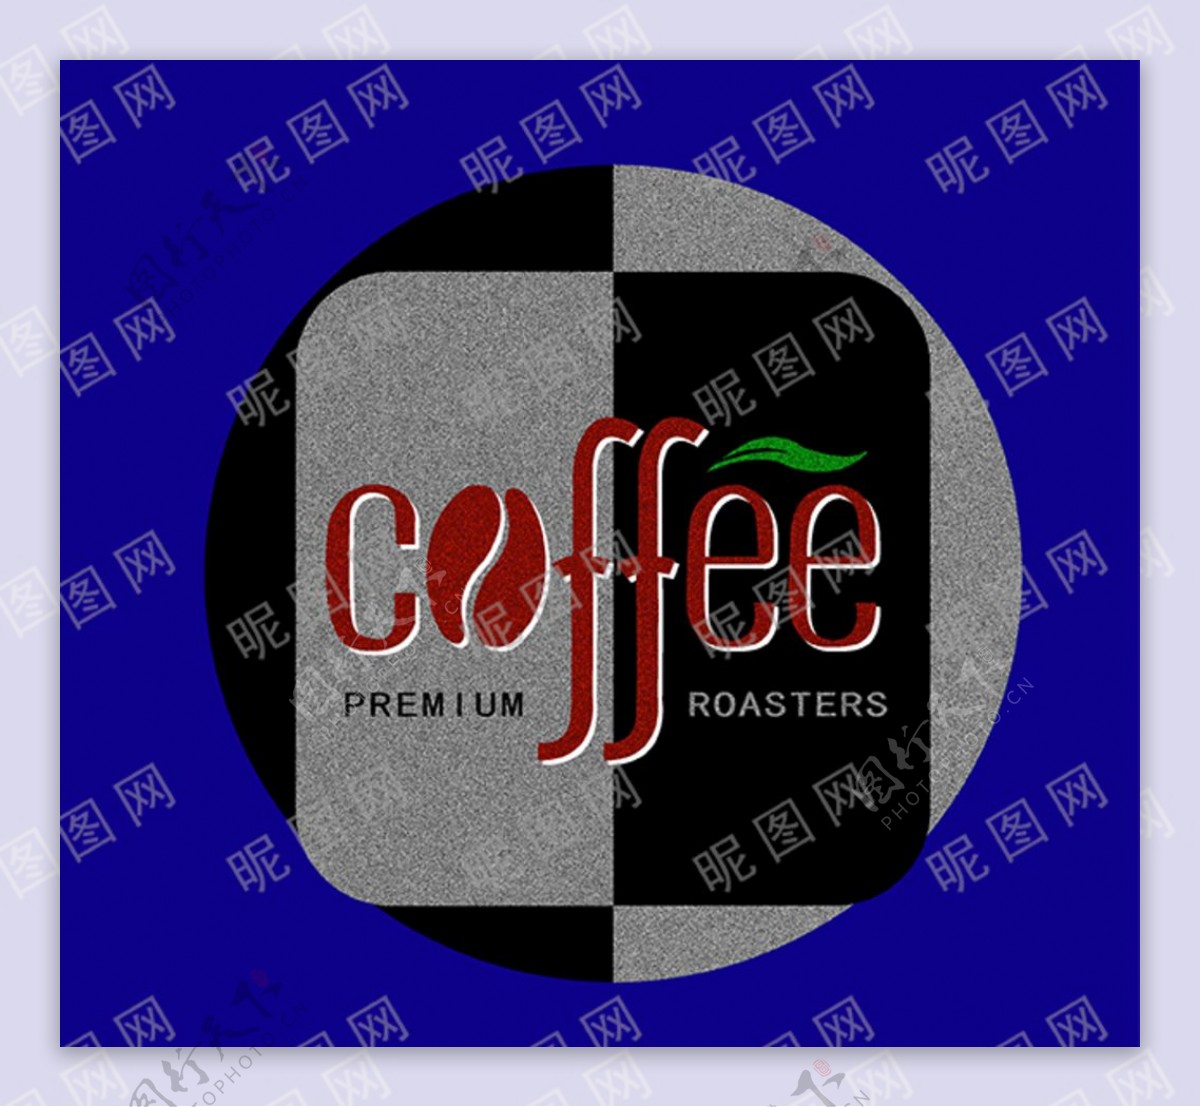 咖啡标志